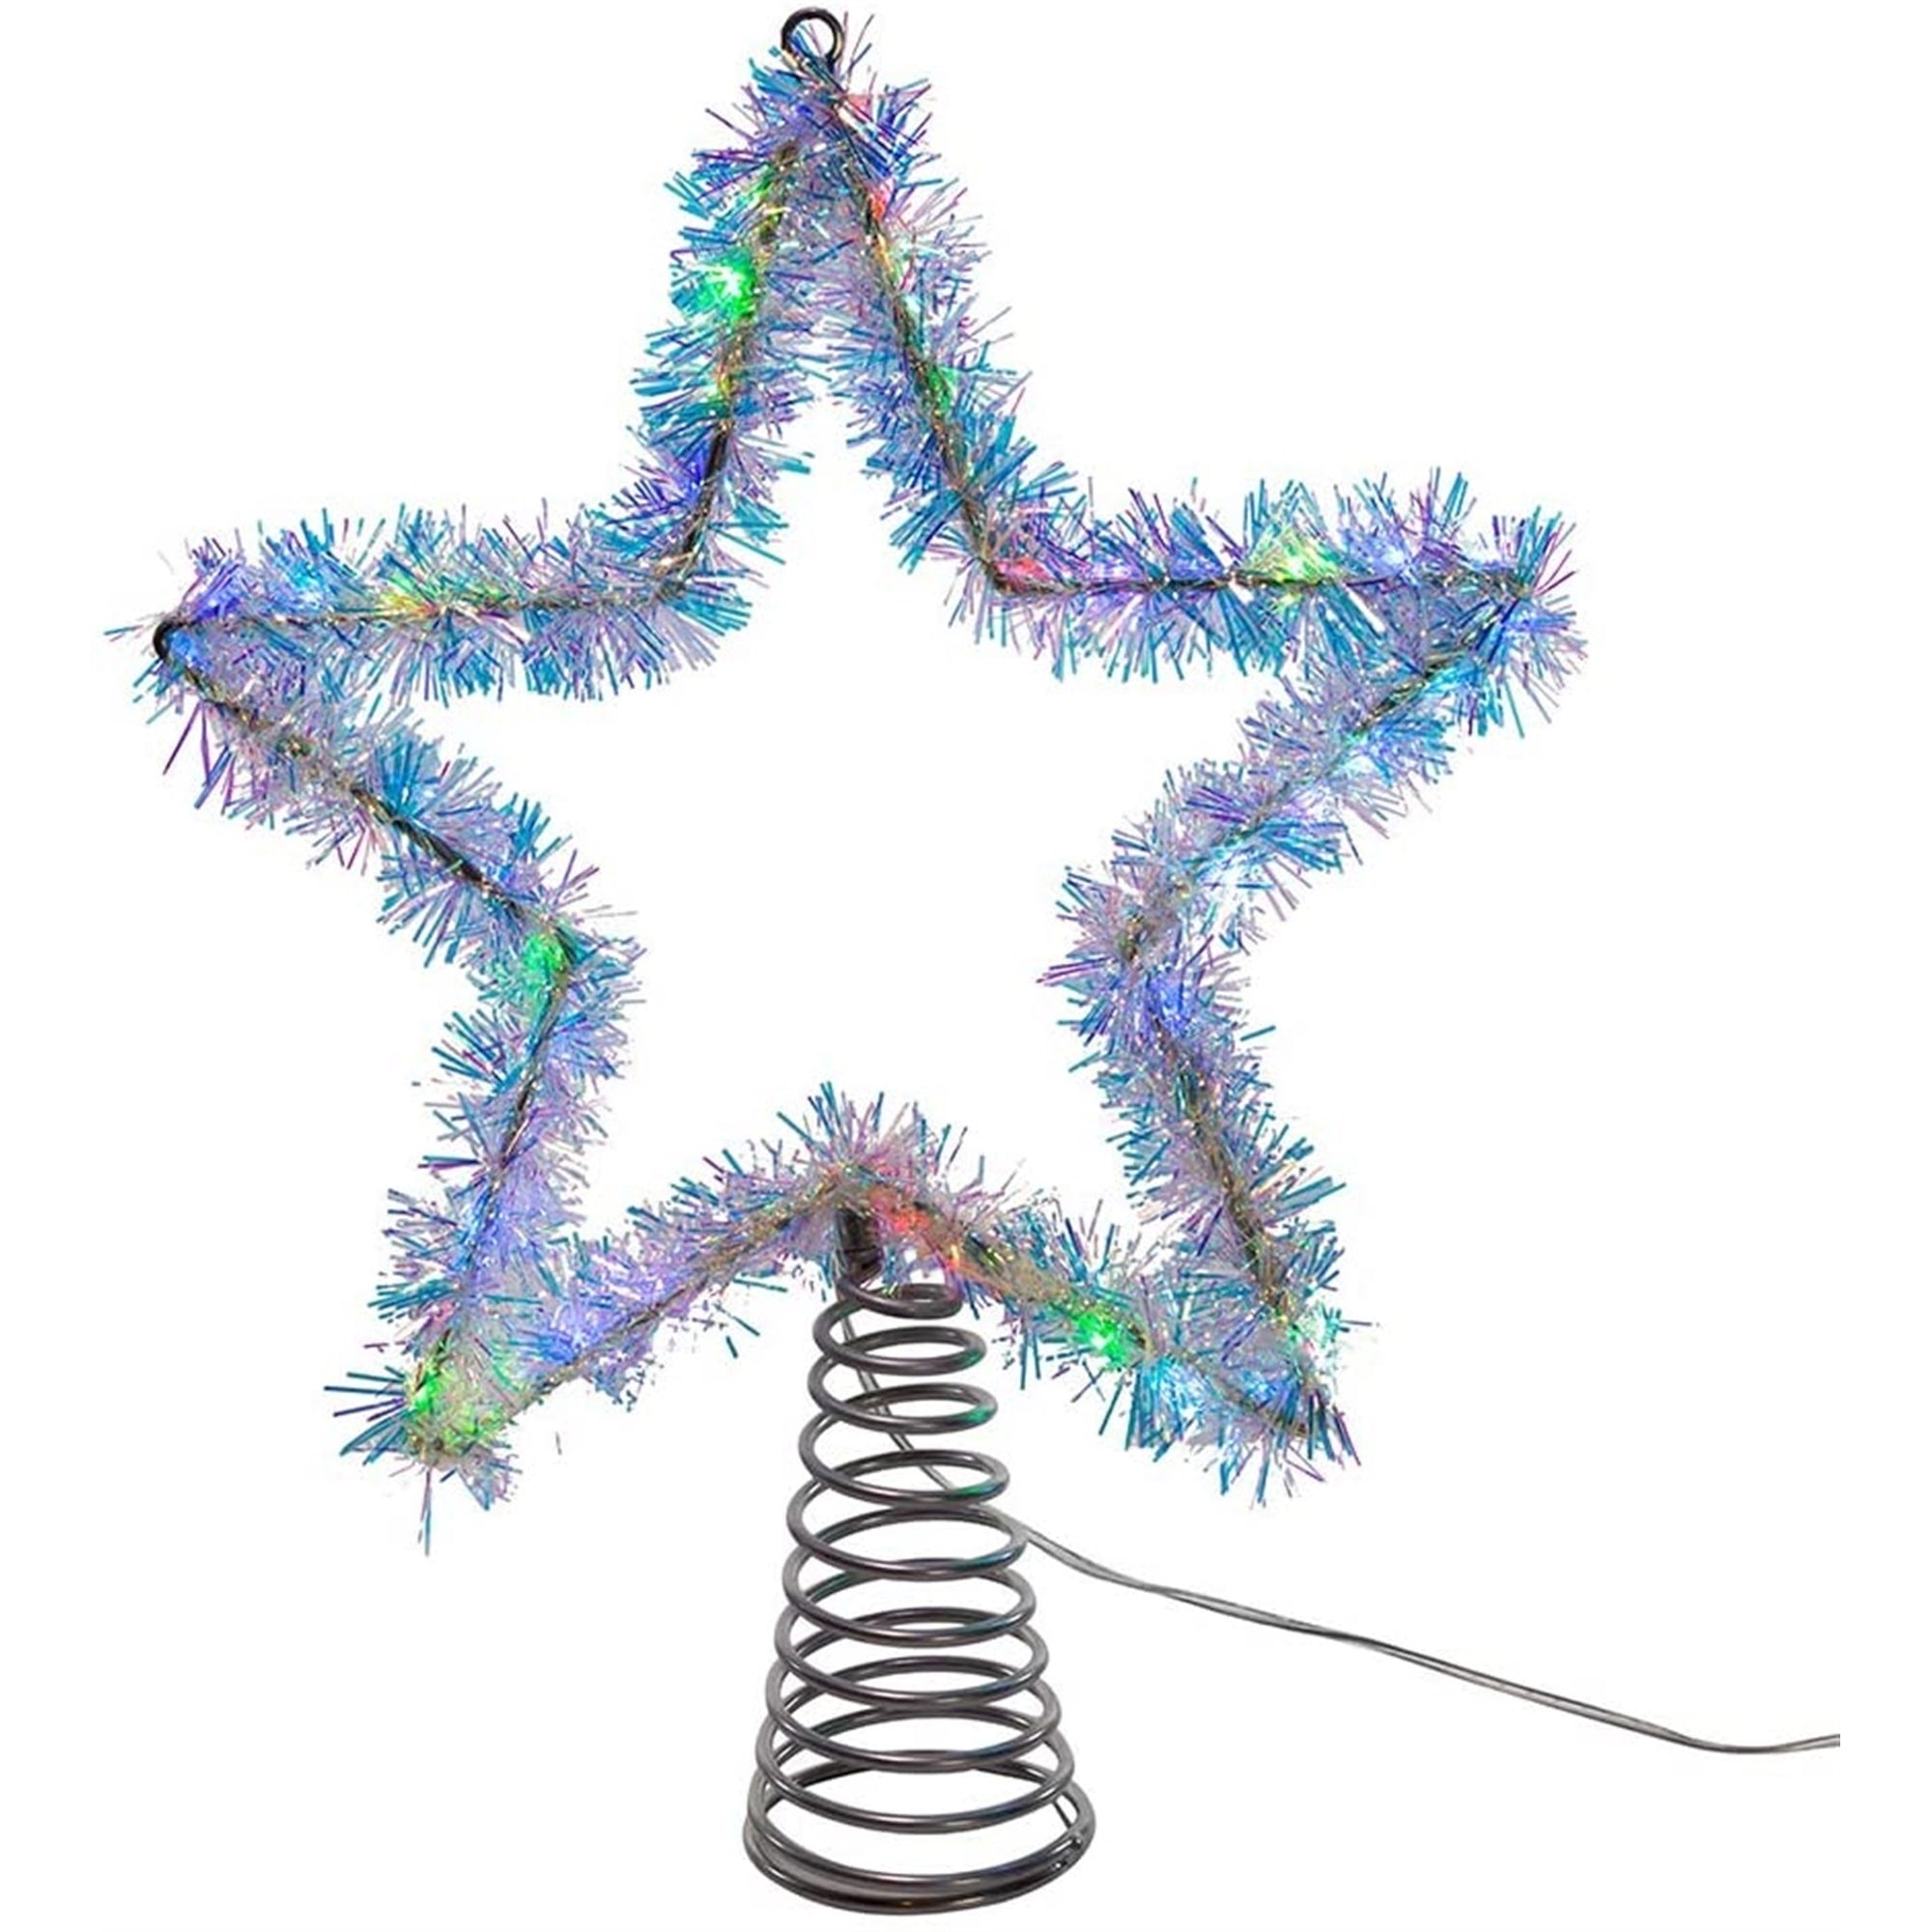 Kurt Adler Lighted Tinsil Star Tree Topper with LED lights. 12"